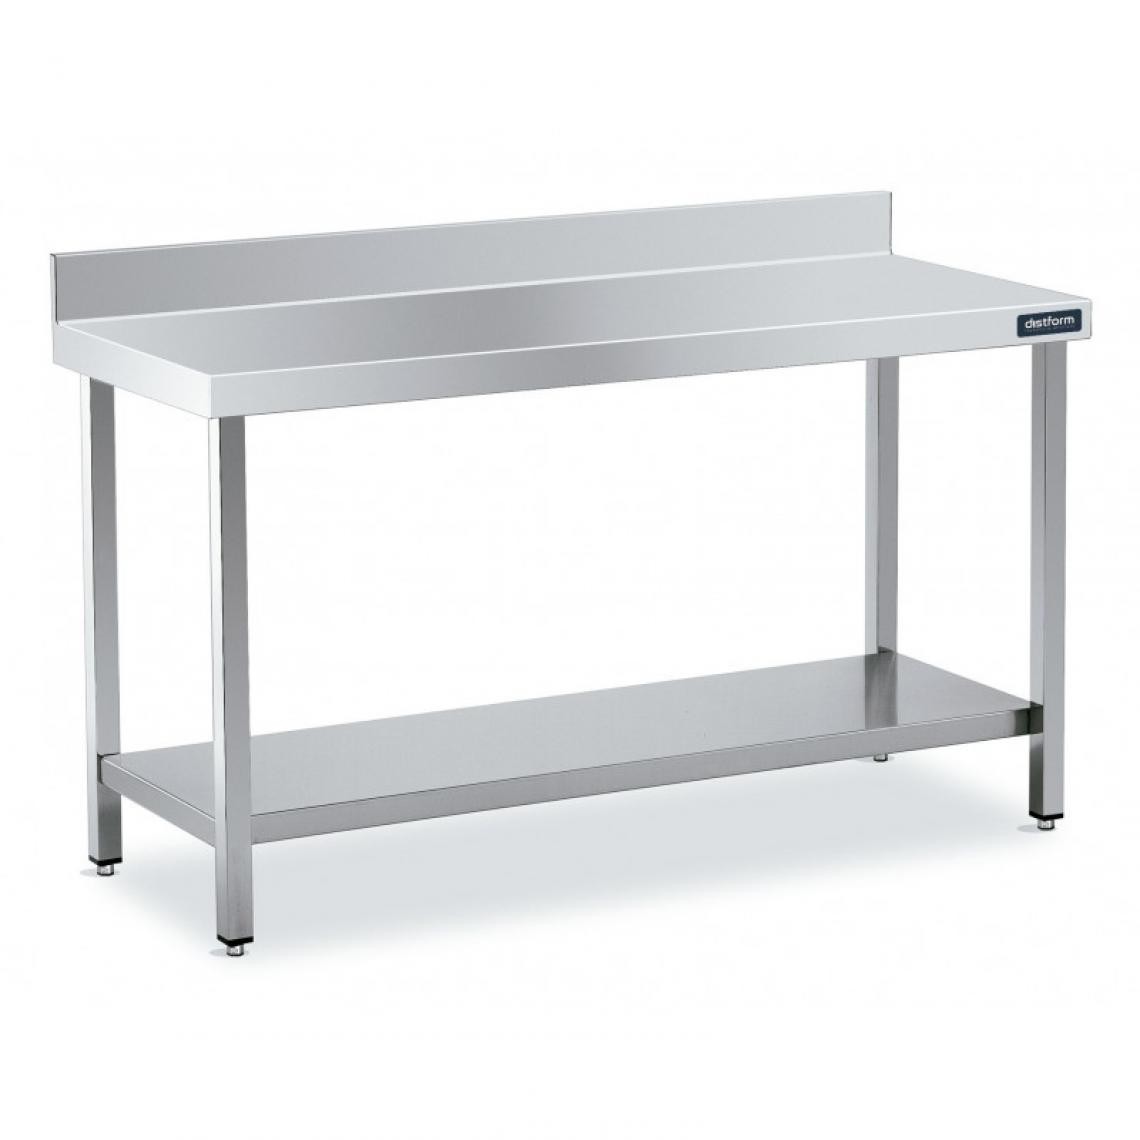 DISTFORM - Table Adossée en Inox avec 1 étagère Profondeur 600 mm - Distform - Acier inoxydable600x600 - Tables à manger